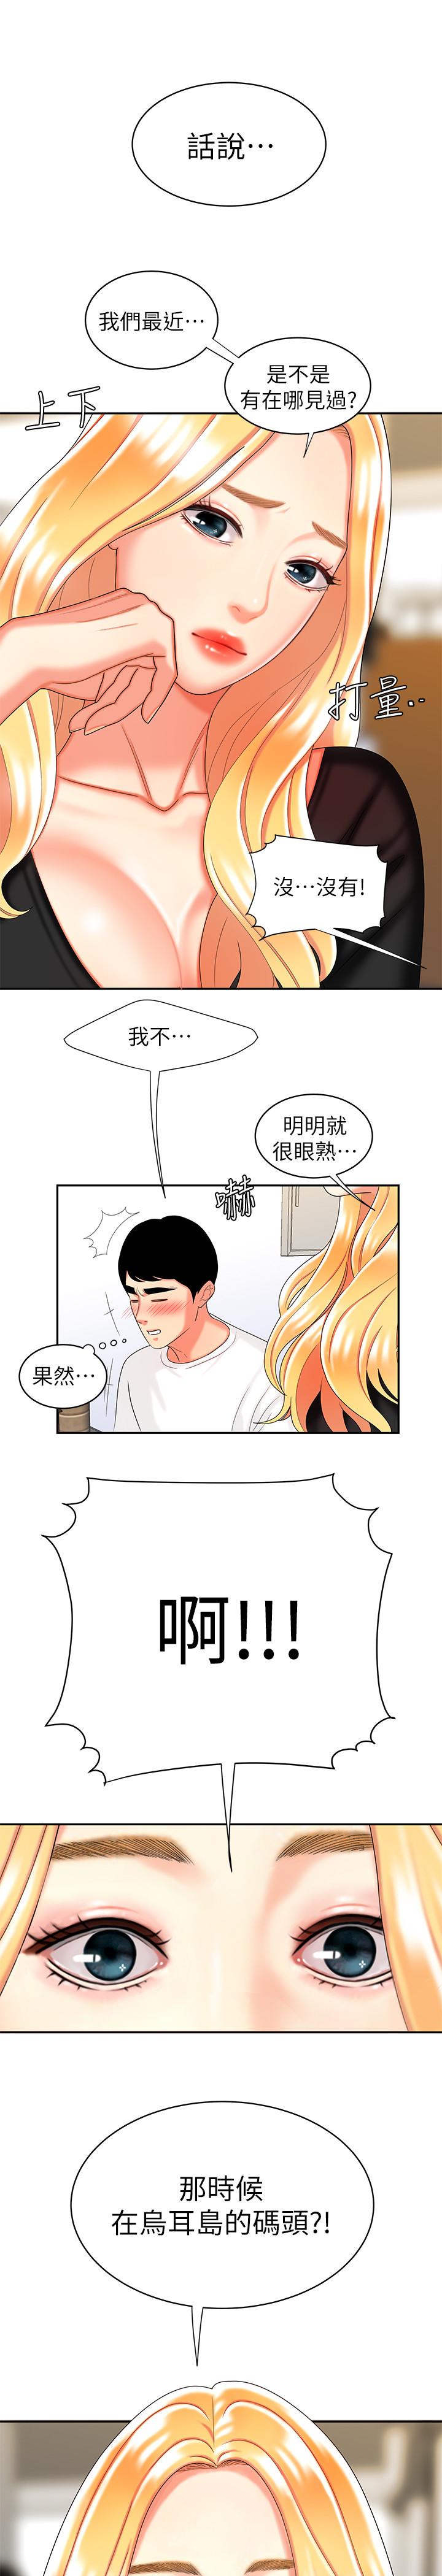 韩国污漫画 幸福外送員 第10话-在炸鸡店重新开始 26